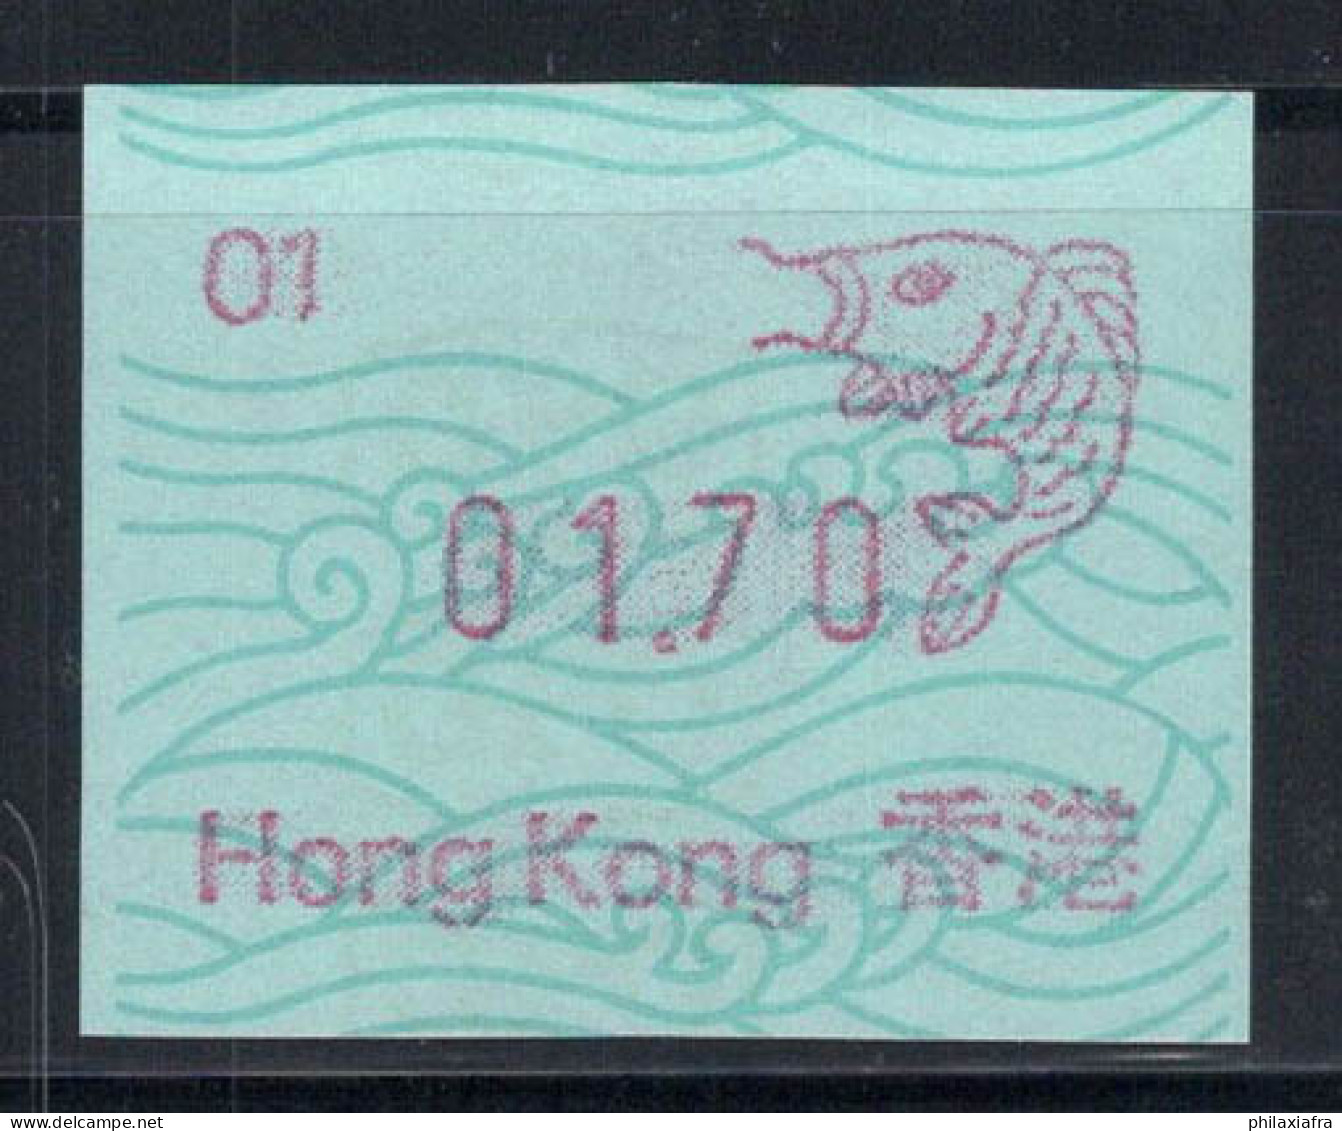 Hong Kong 1986 Mi. 1 Neuf ** 100% 01.70 - Automaten